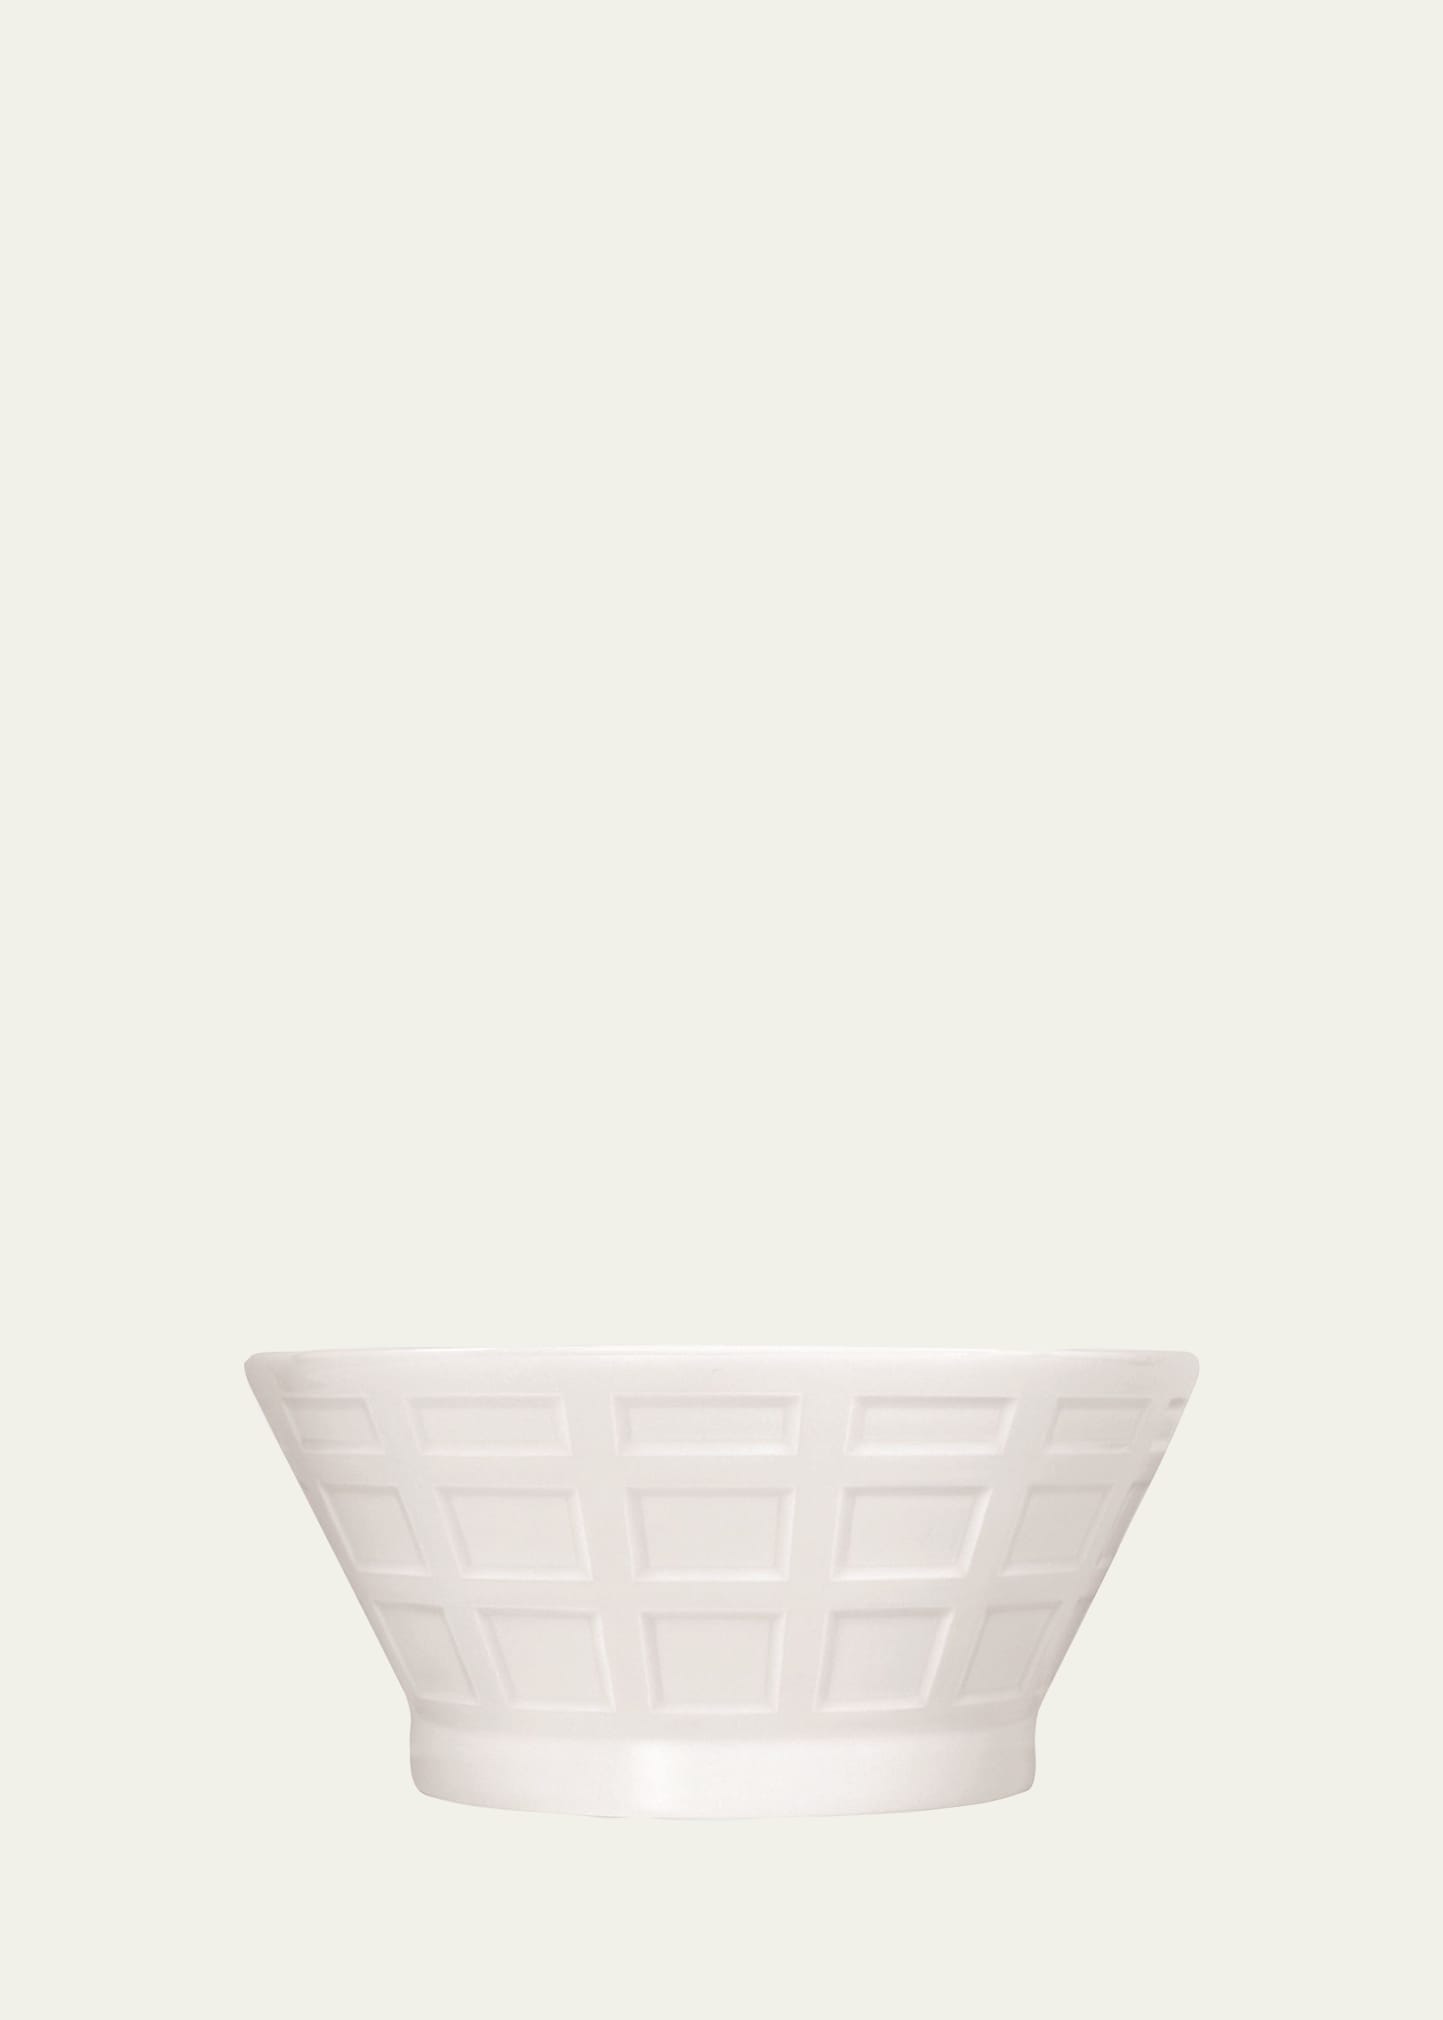 Bernardaud Naxos Large Salad Bowl In White